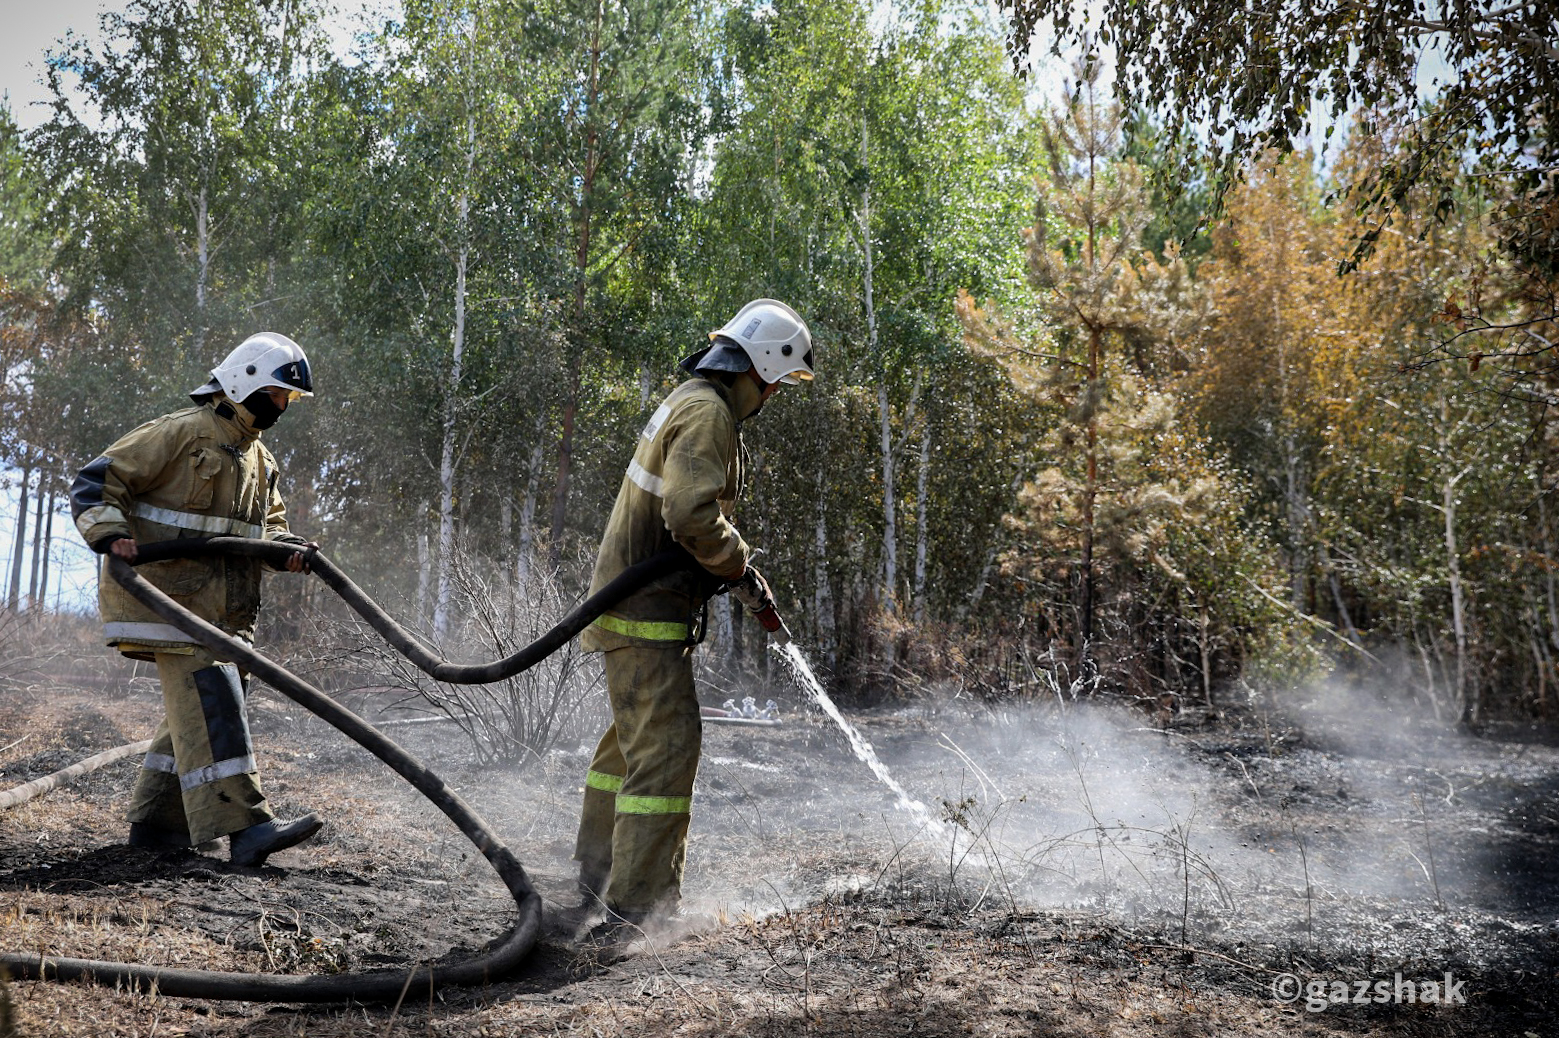 Истории костанайских пожарных, продолжающих борьбу с огнем